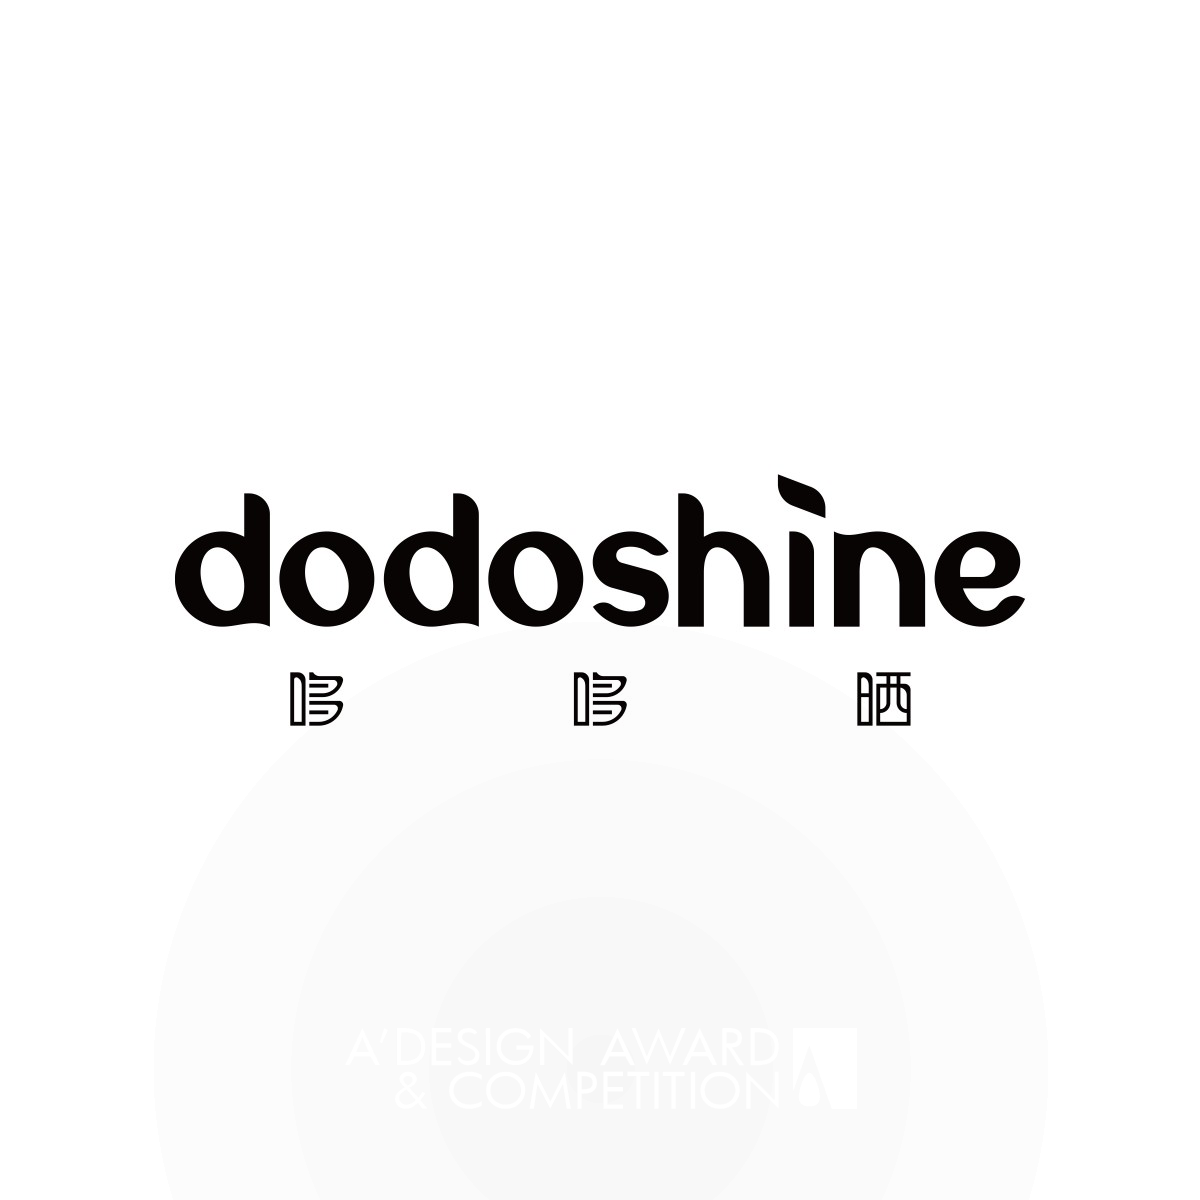 Dodoshine